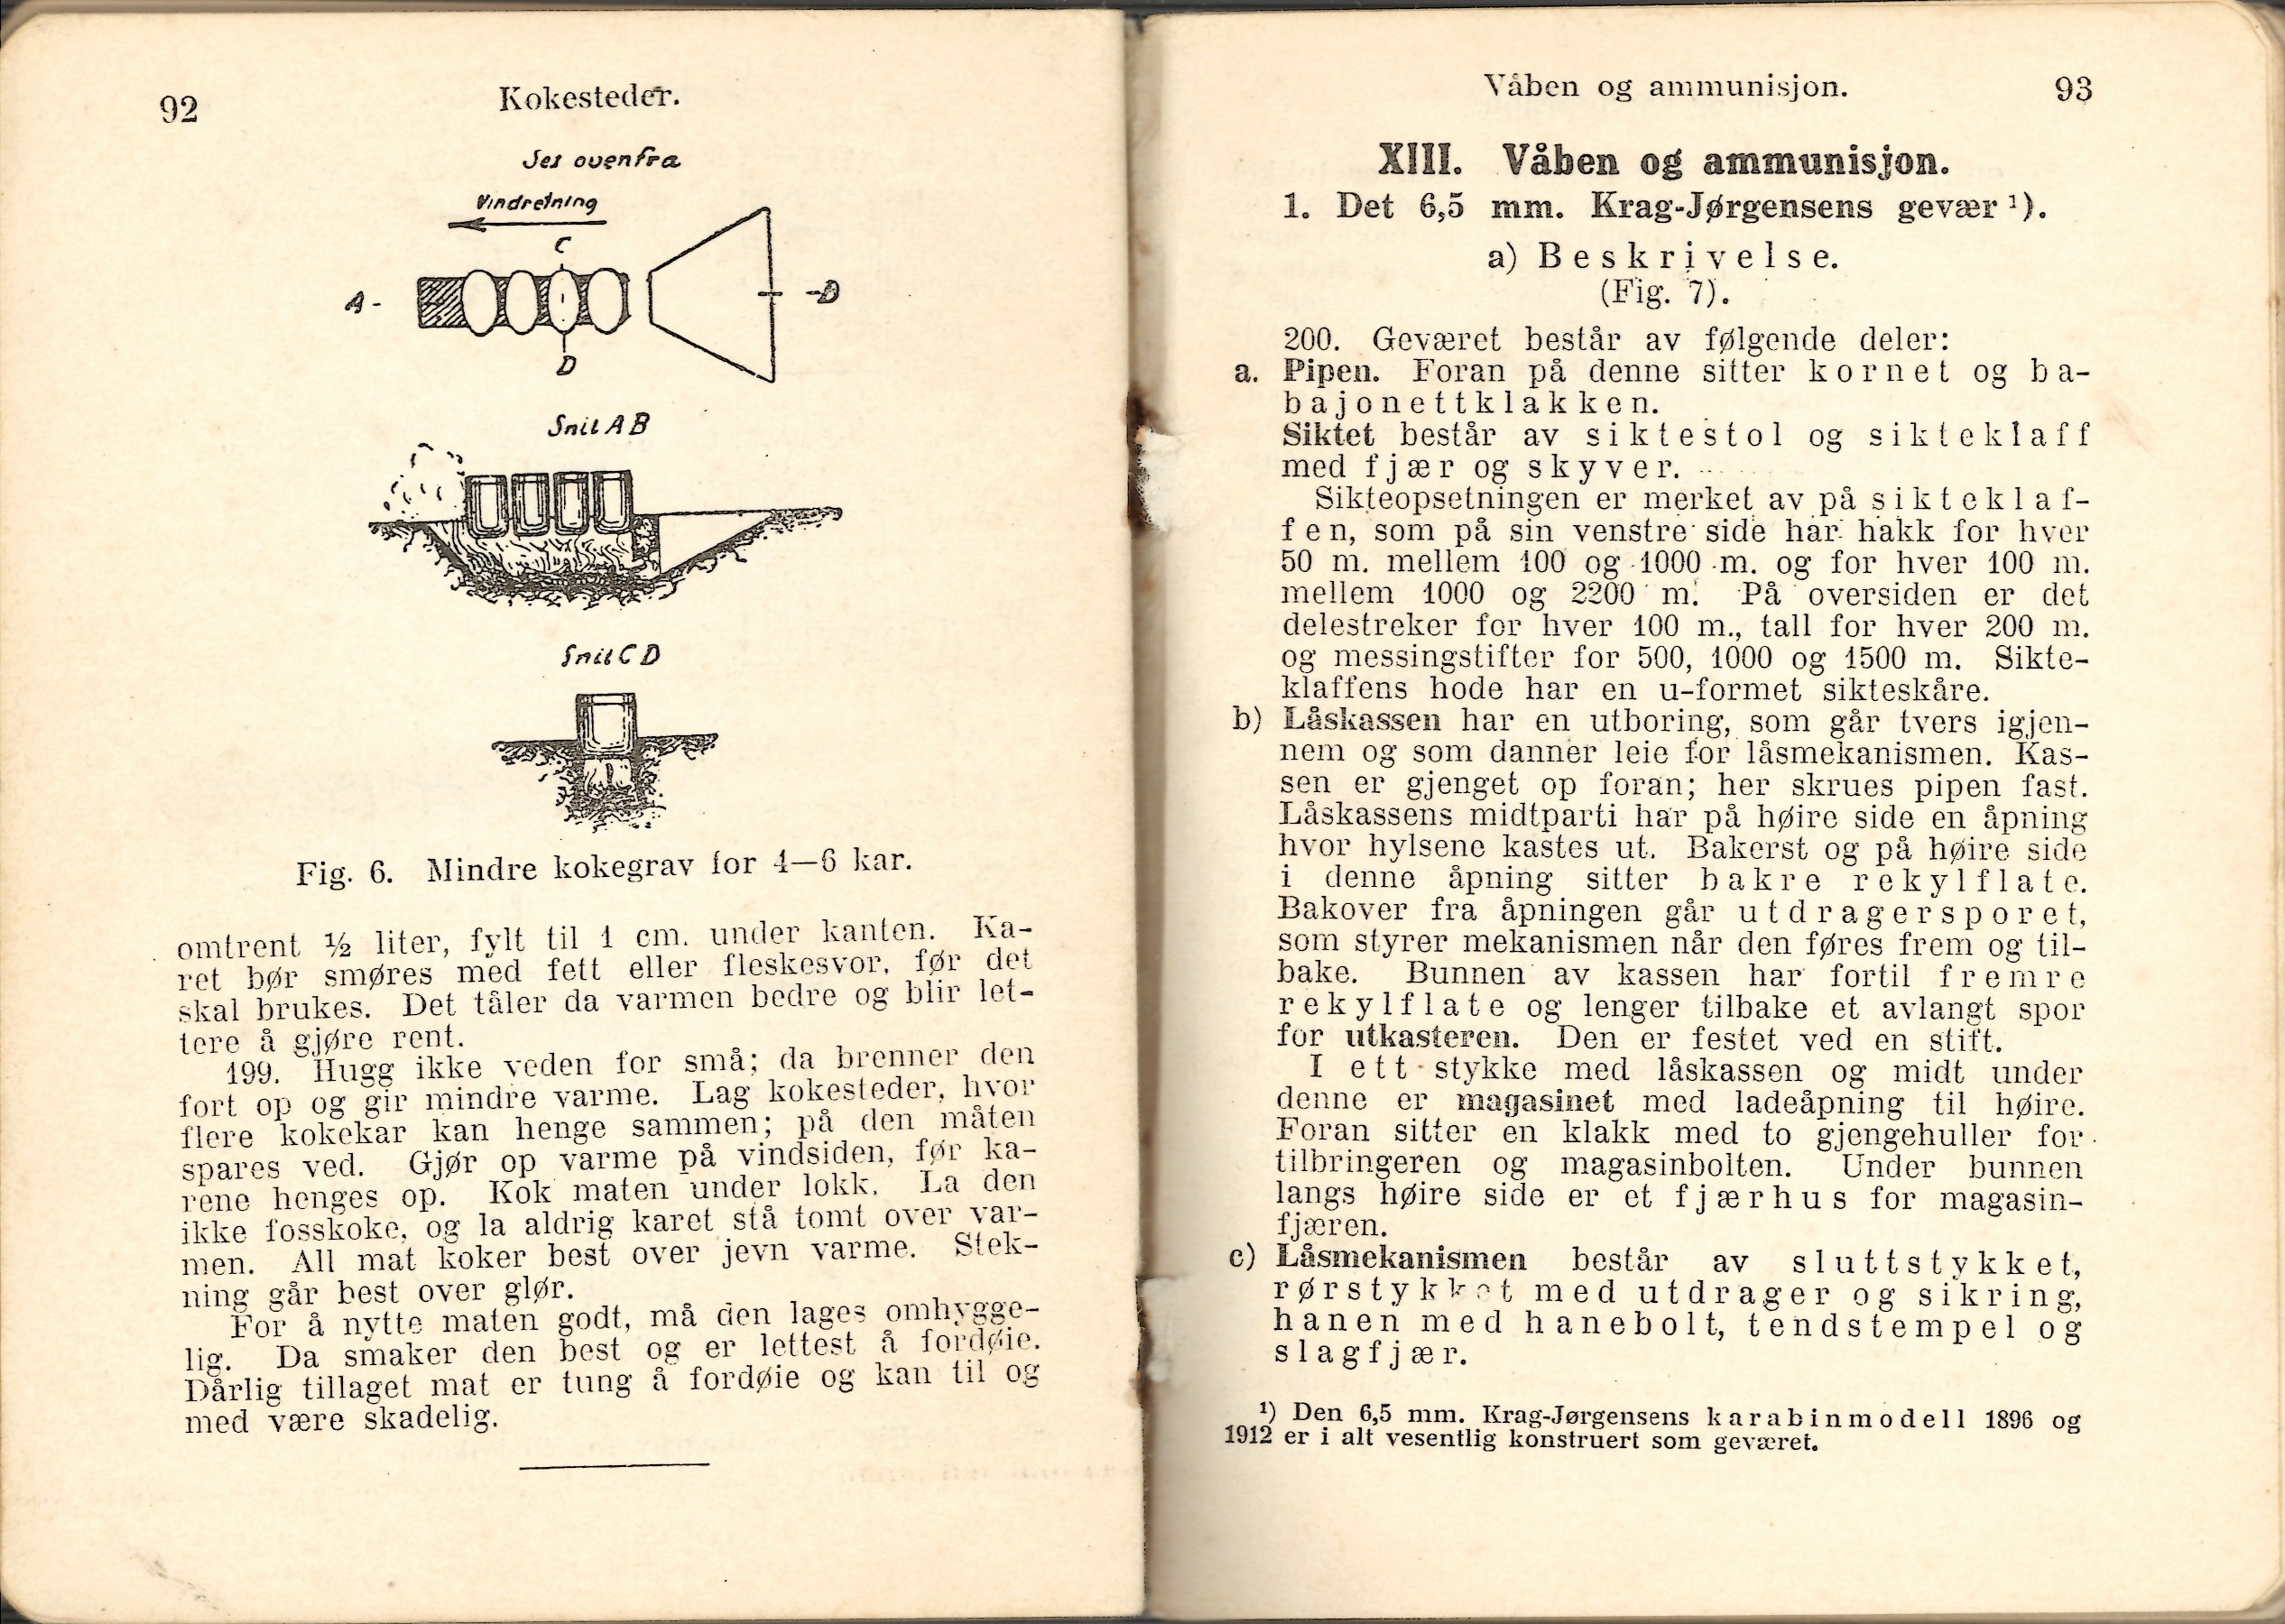 ./doc/reglement/Haandbok1925/Haandbok-for-infanteristen-1925-7.jpg